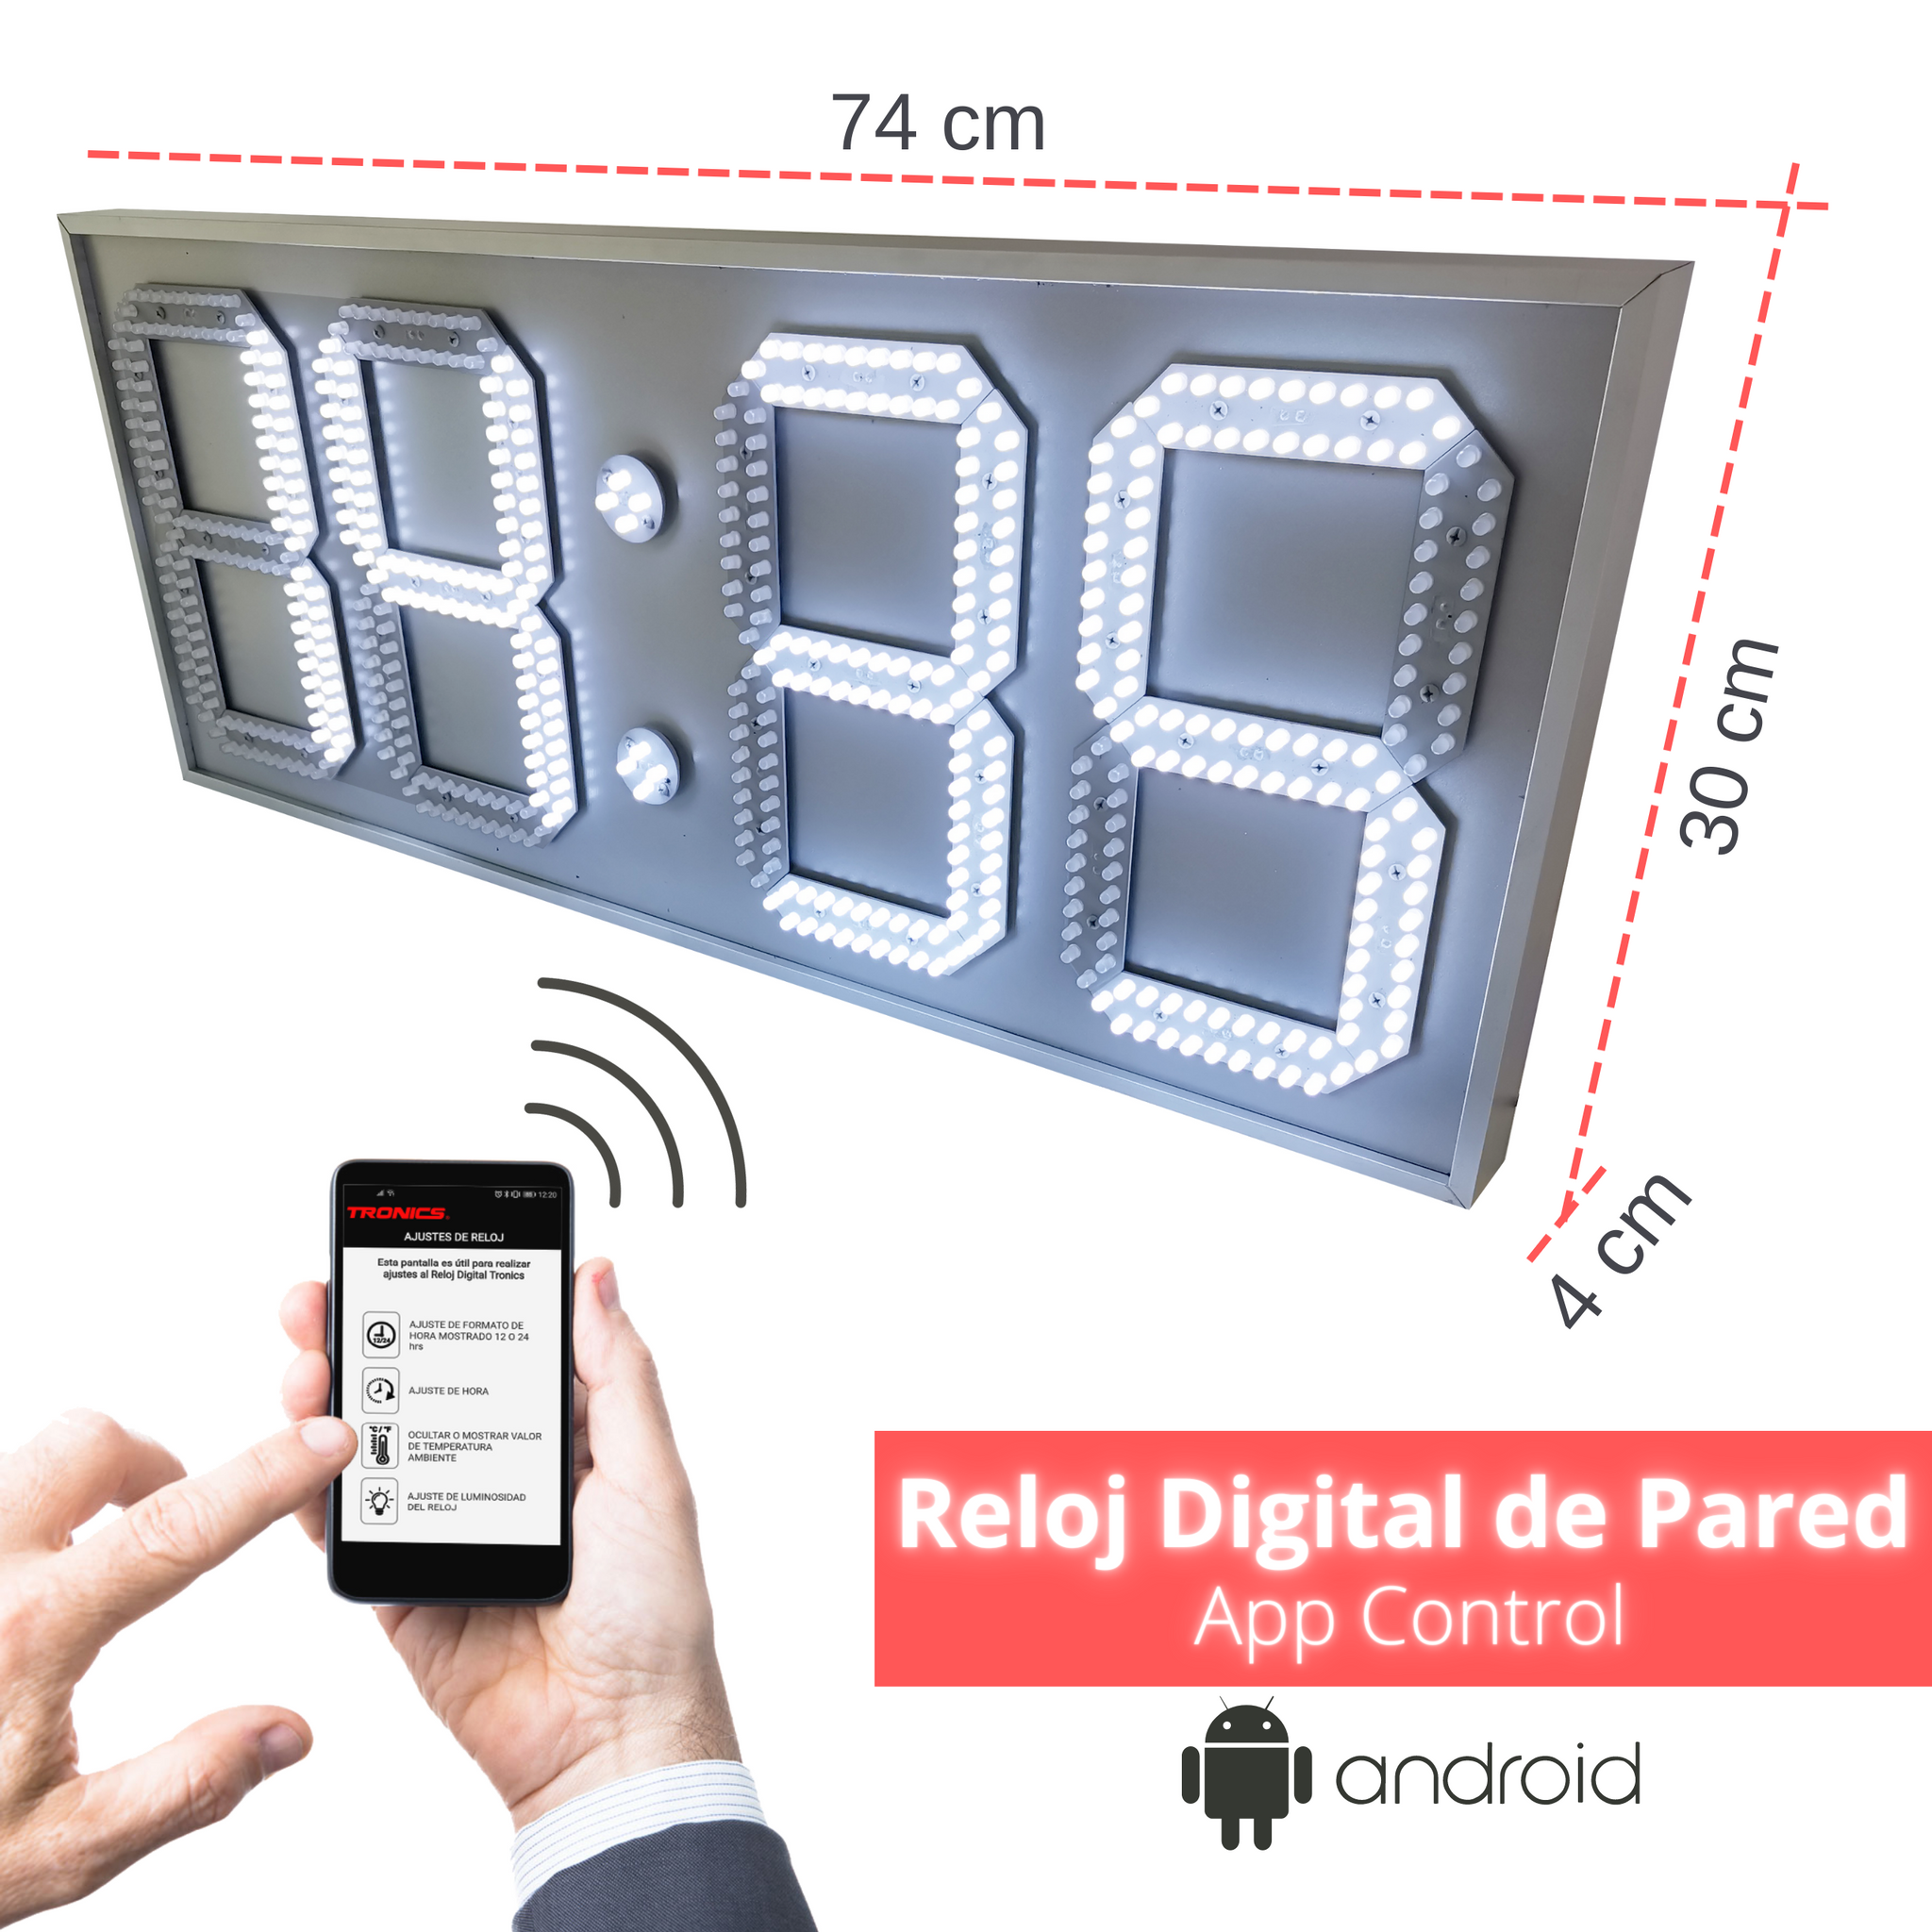 Reloj digital de pared con temperatura y gps, reloj digital de pared, reloj  con pantalla led, reloj de pared oficina